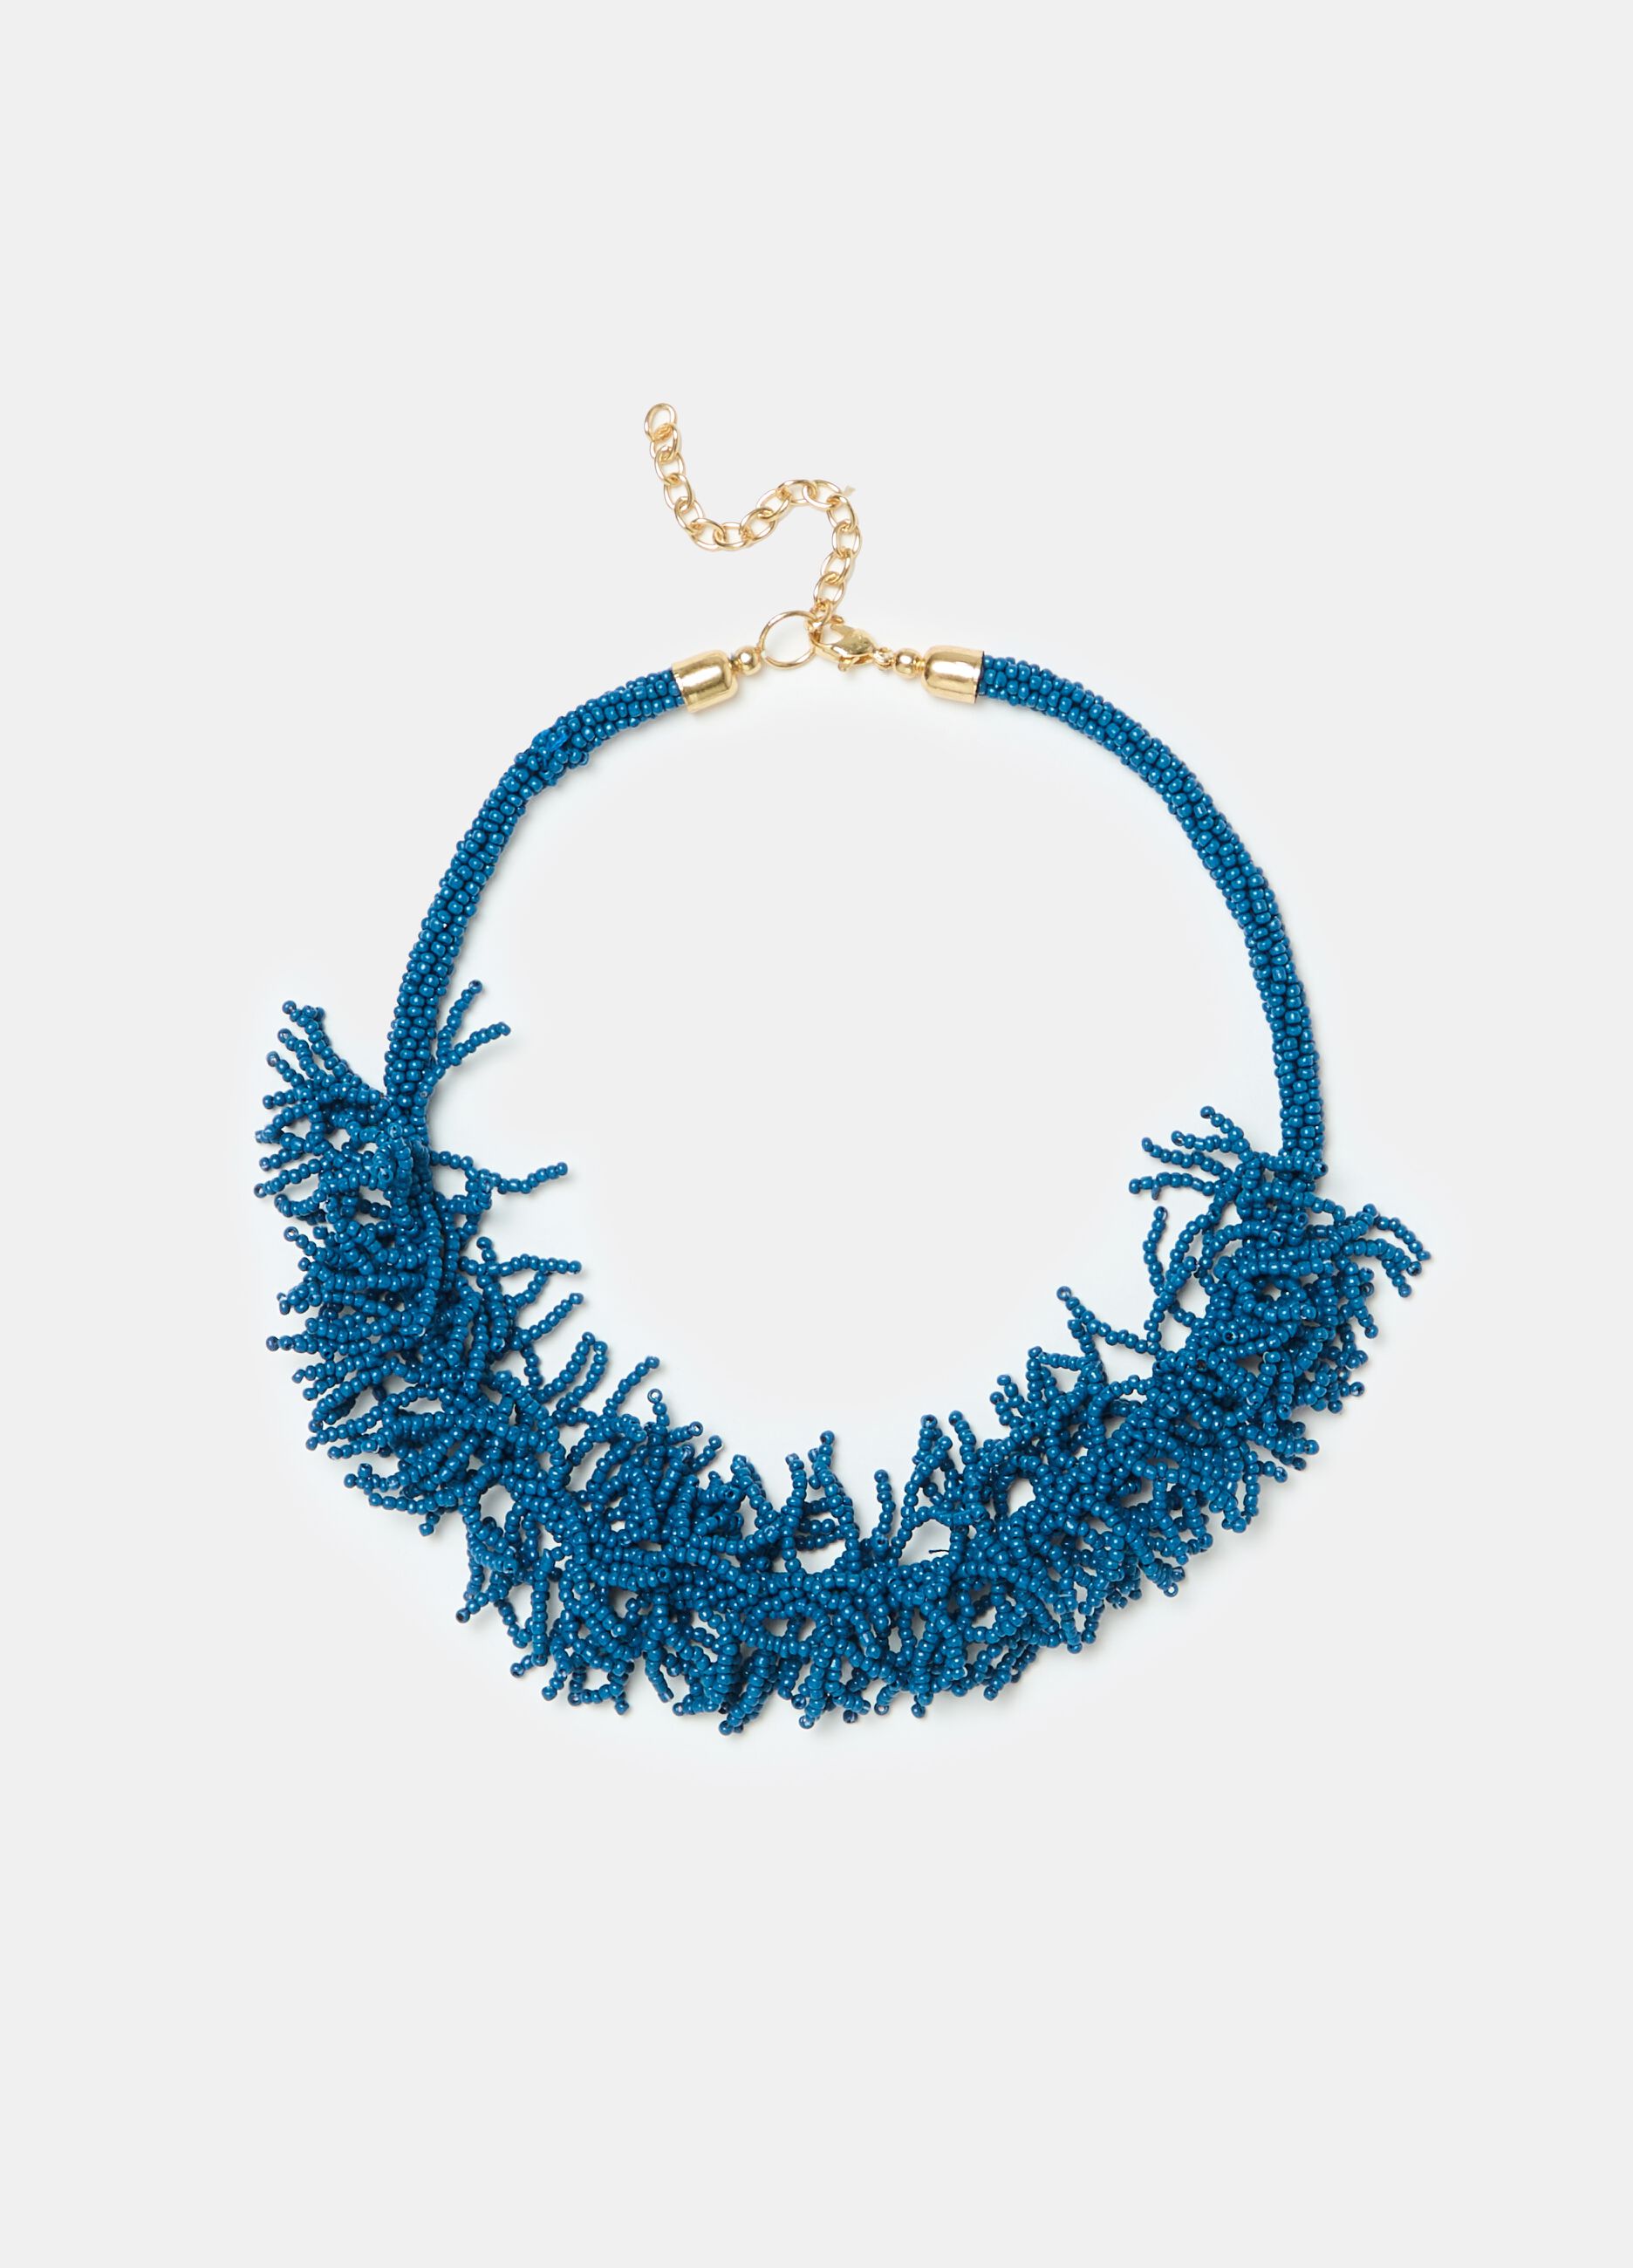 Positano coral summer necklace